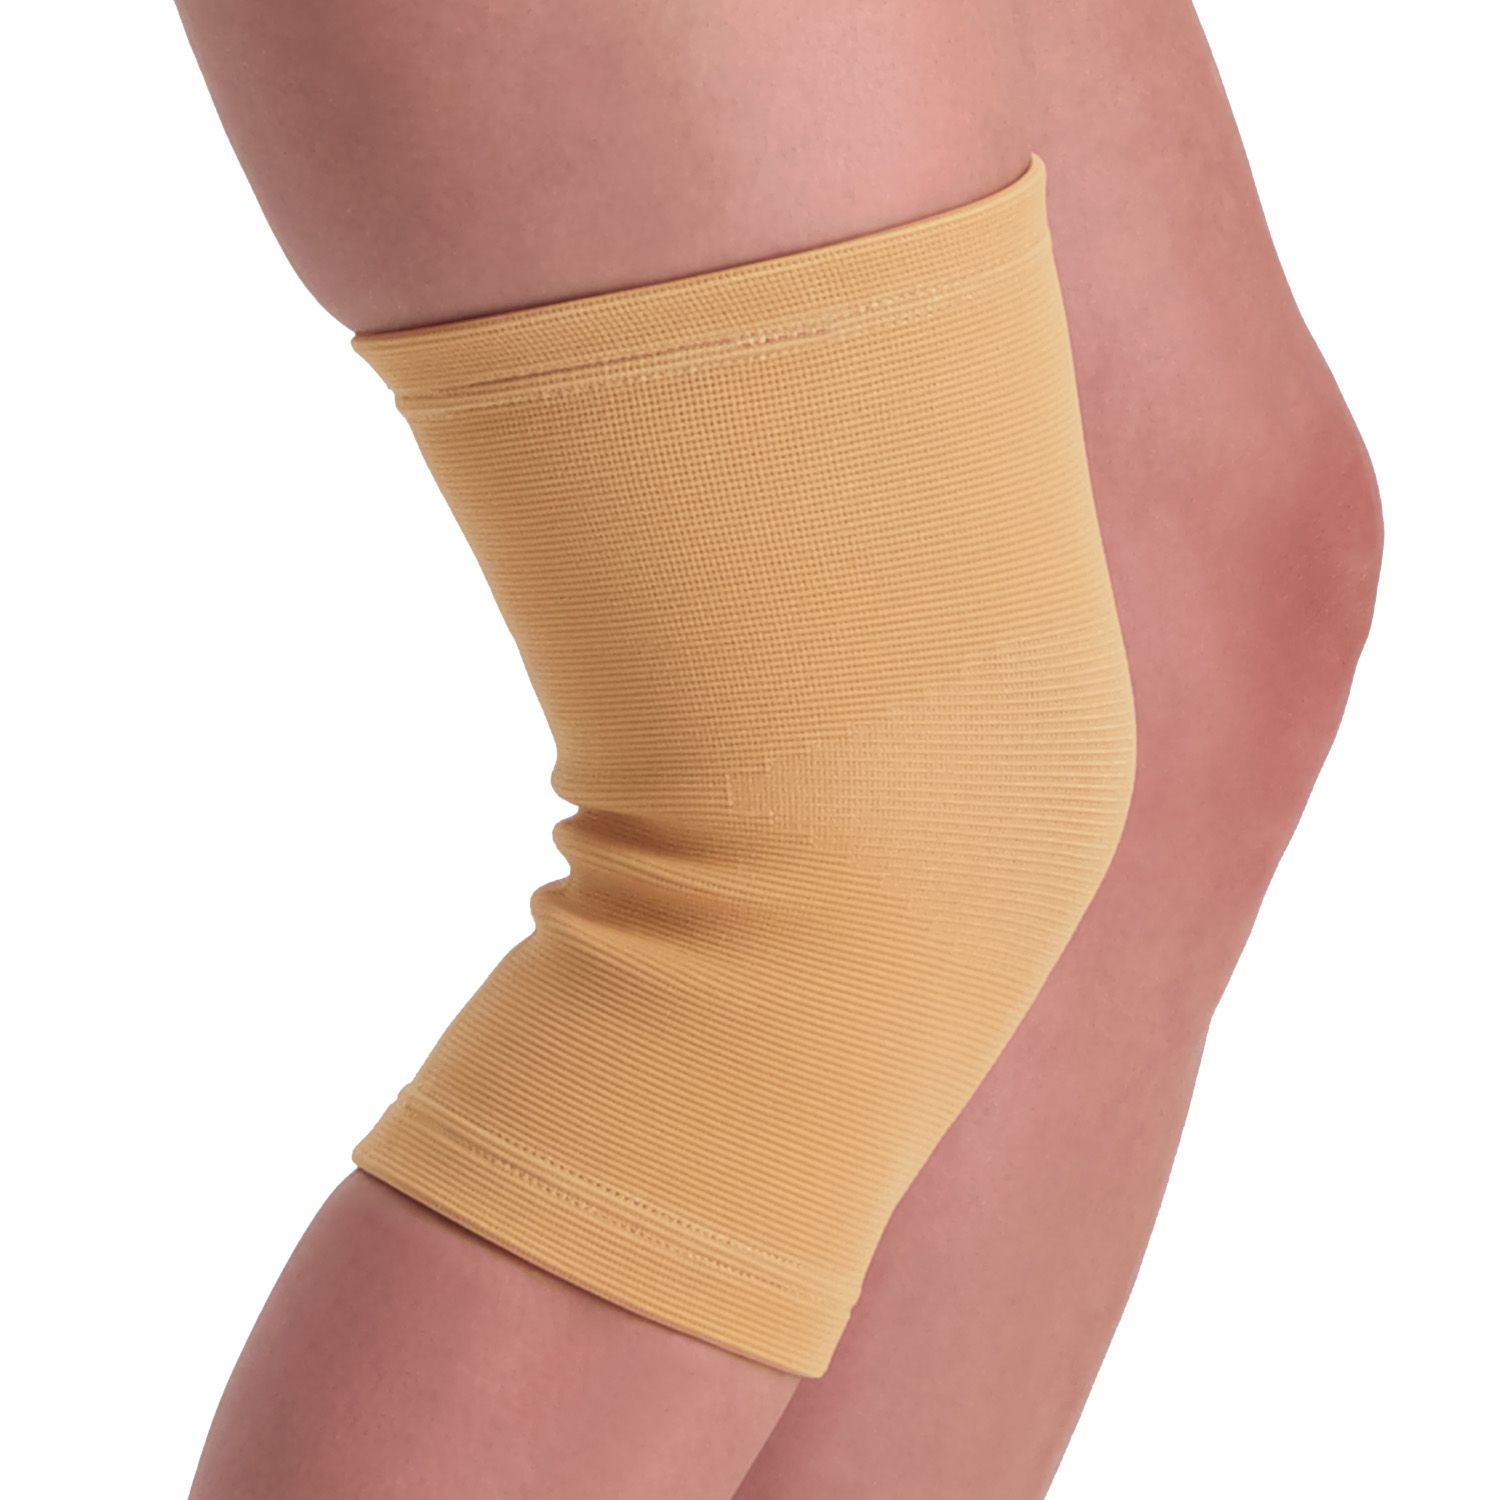 medidu knee sleeve side view